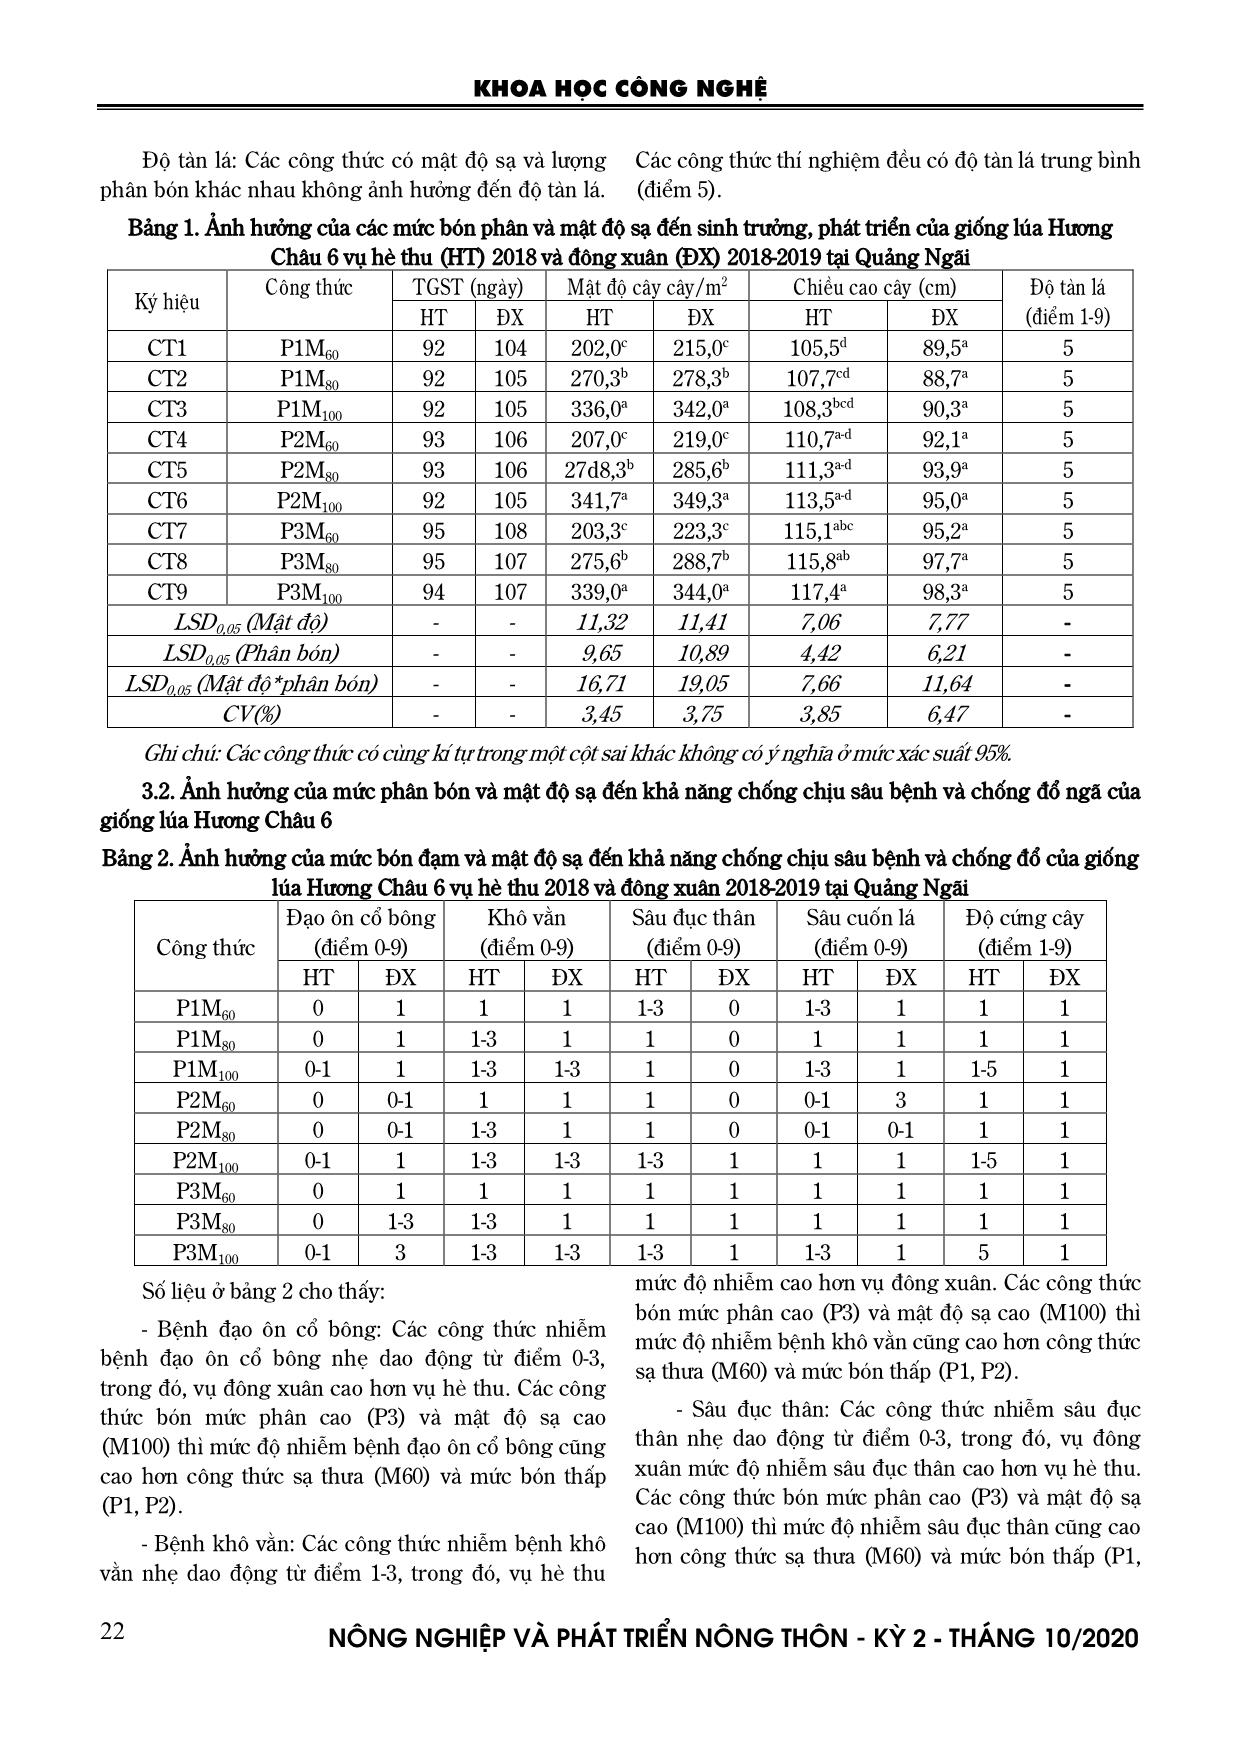 Nghiên cứu ảnh hưởng của các mức phân bón và mật độ sạ đối với giống lúa Hương Châu 6 tại Quảng Ngãi trang 3